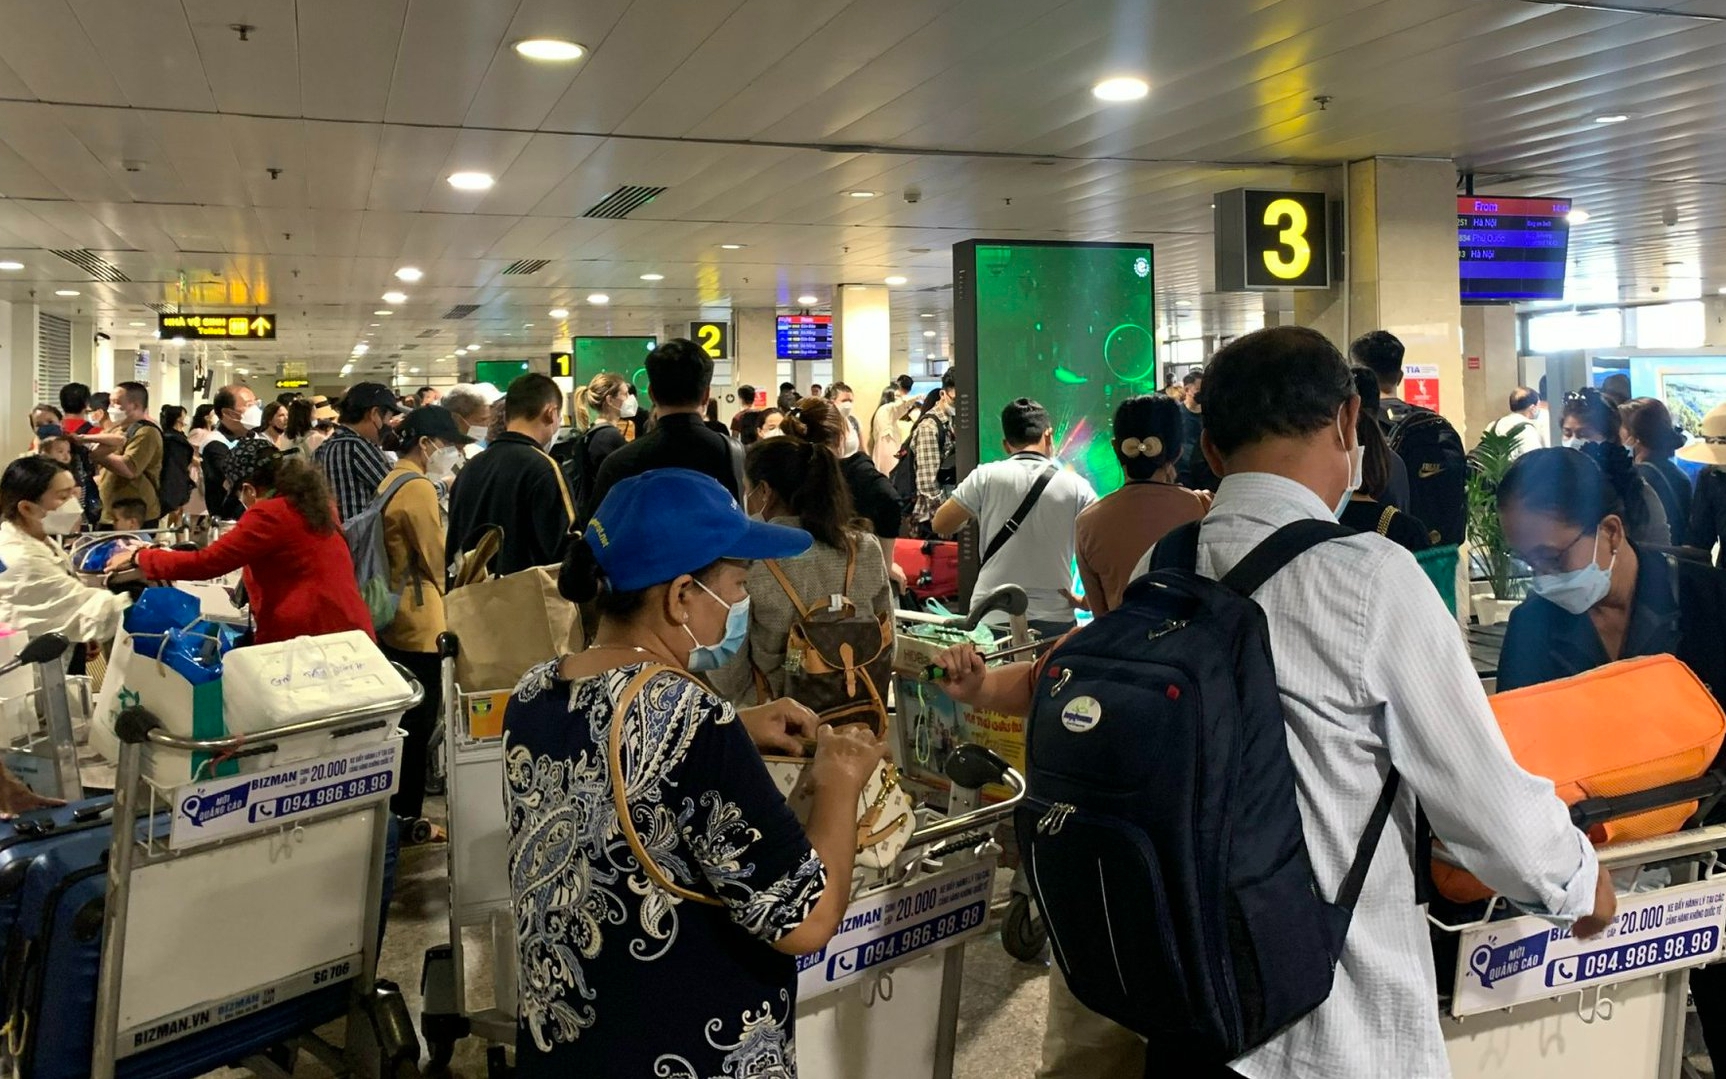 Sân bay Tân Sơn Nhất: Bạn đang muốn khám phá một trong những sân bay hiện đại nhất Việt Nam? Sân bay Tân Sơn Nhất sẽ là một sự lựa chọn hoàn hảo. Với các tiện ích đầy đủ và chất lượng dịch vụ tốt nhất, sân bay này sẽ mang đến cho bạn trải nghiệm đáng nhớ. Chỉ cần một lần ghé thăm, bạn sẽ chắc chắn muốn quay lại.